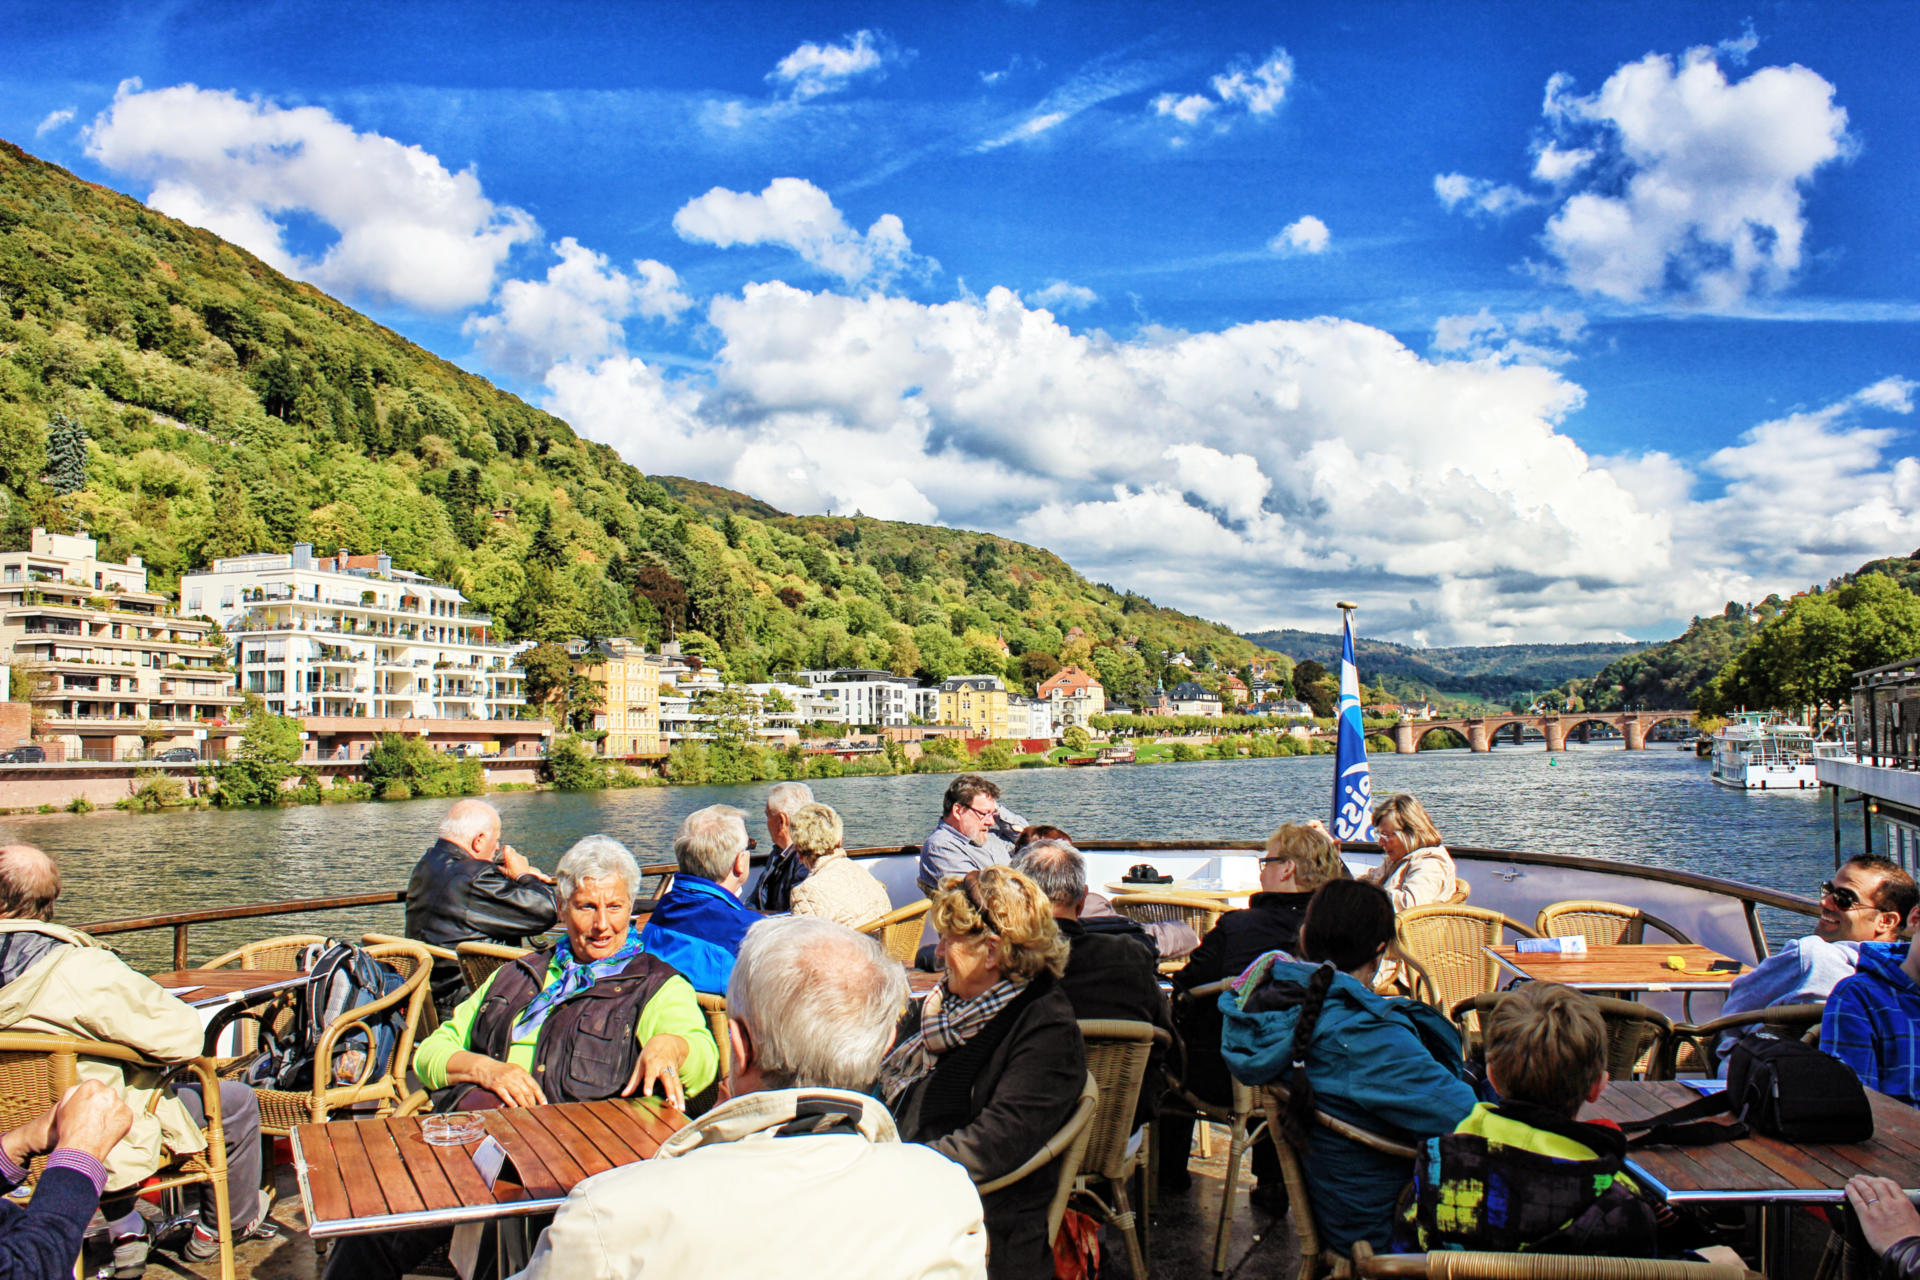 Bei dieser Reise lernen Sie die schönsten und größten deutschen Flüsse, Rhein, Mosel, Main, Neckar, bei vier Schifffahrten (inklusive) kennen und besuchen interessante Städte und romantische Landschaften.